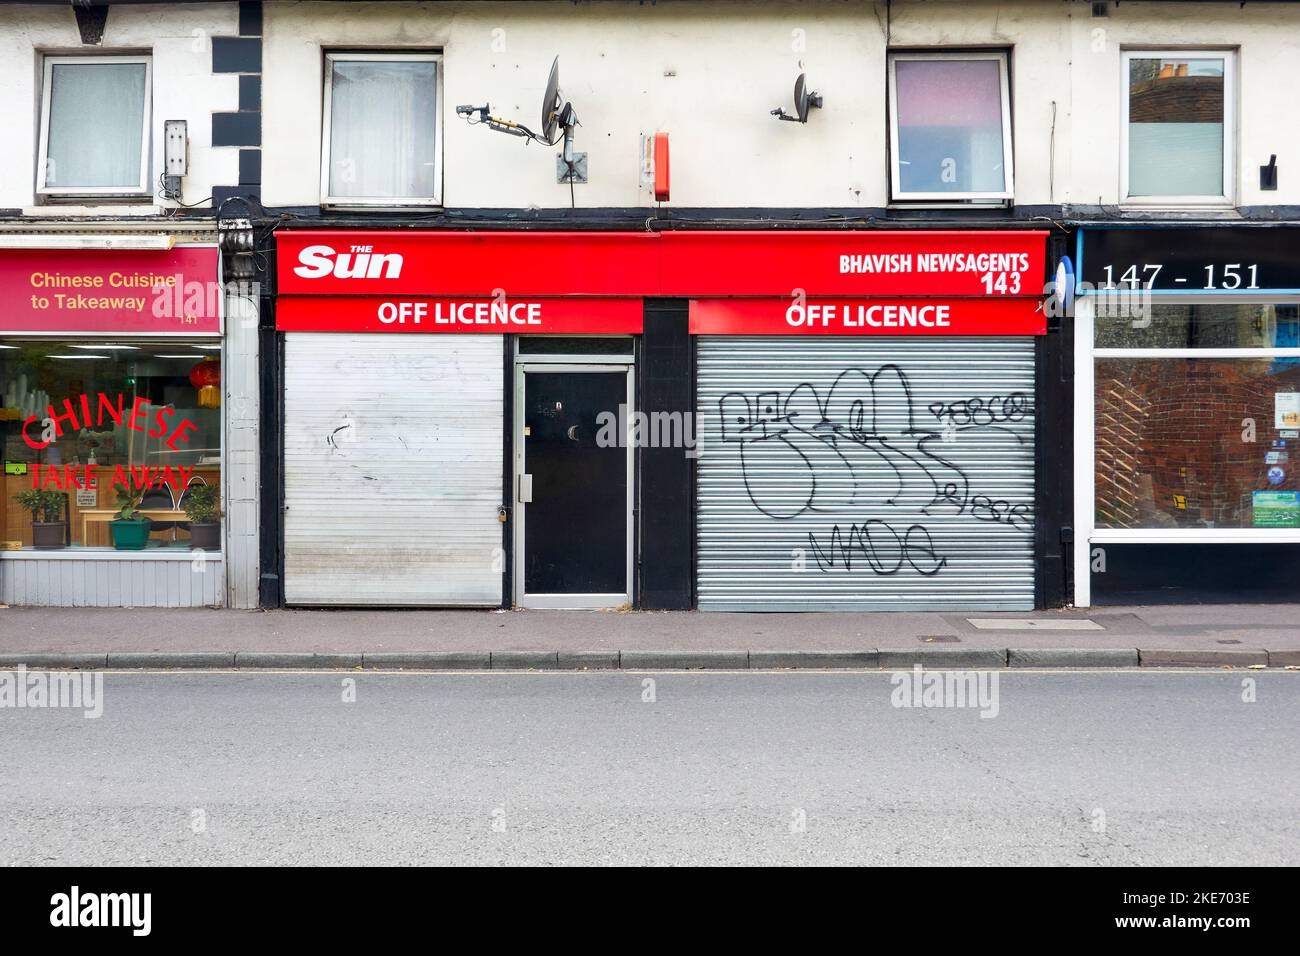 Sicherheitsläden aus Stahl, die die Fenster eines Zeitungskiosks und eines Lizenzladens mit Graffiti bedecken Stockfoto